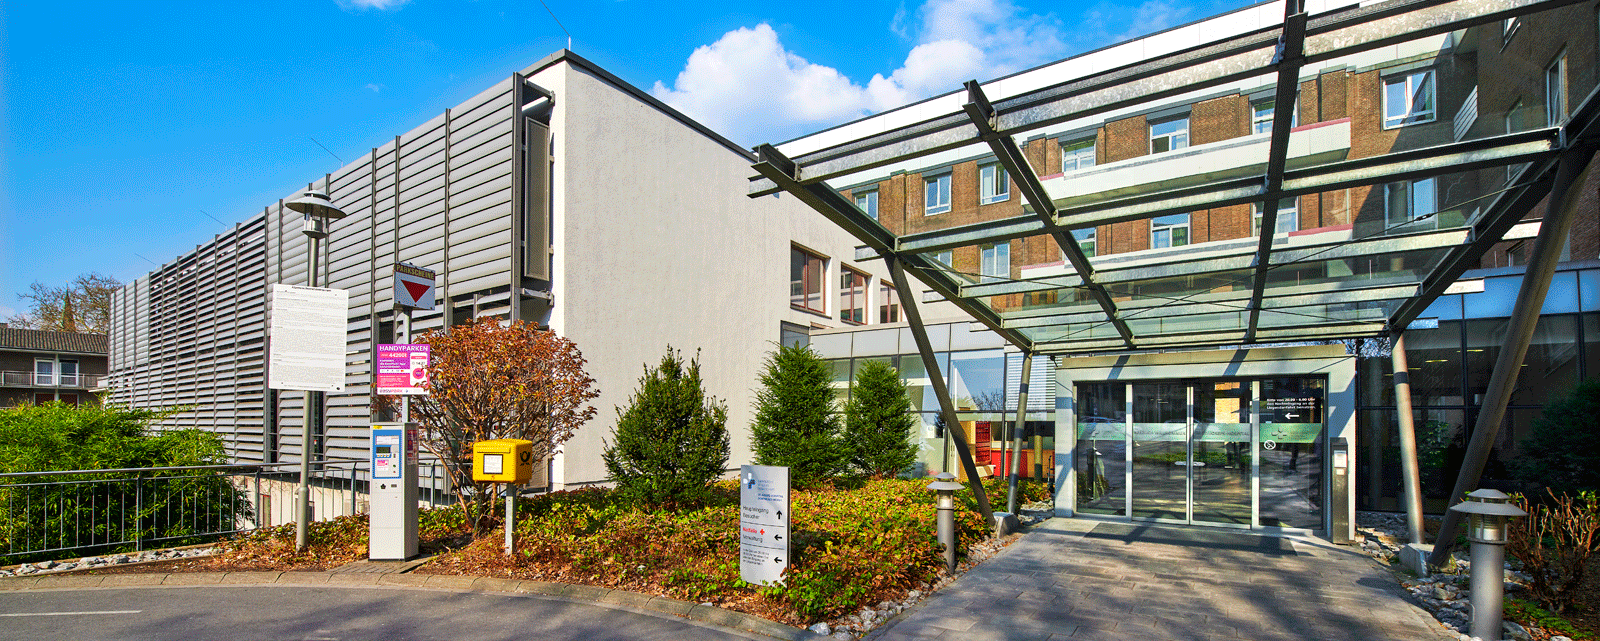 St.JosefsHospital - Hausansicht - Foto Ekkehart Reinsch